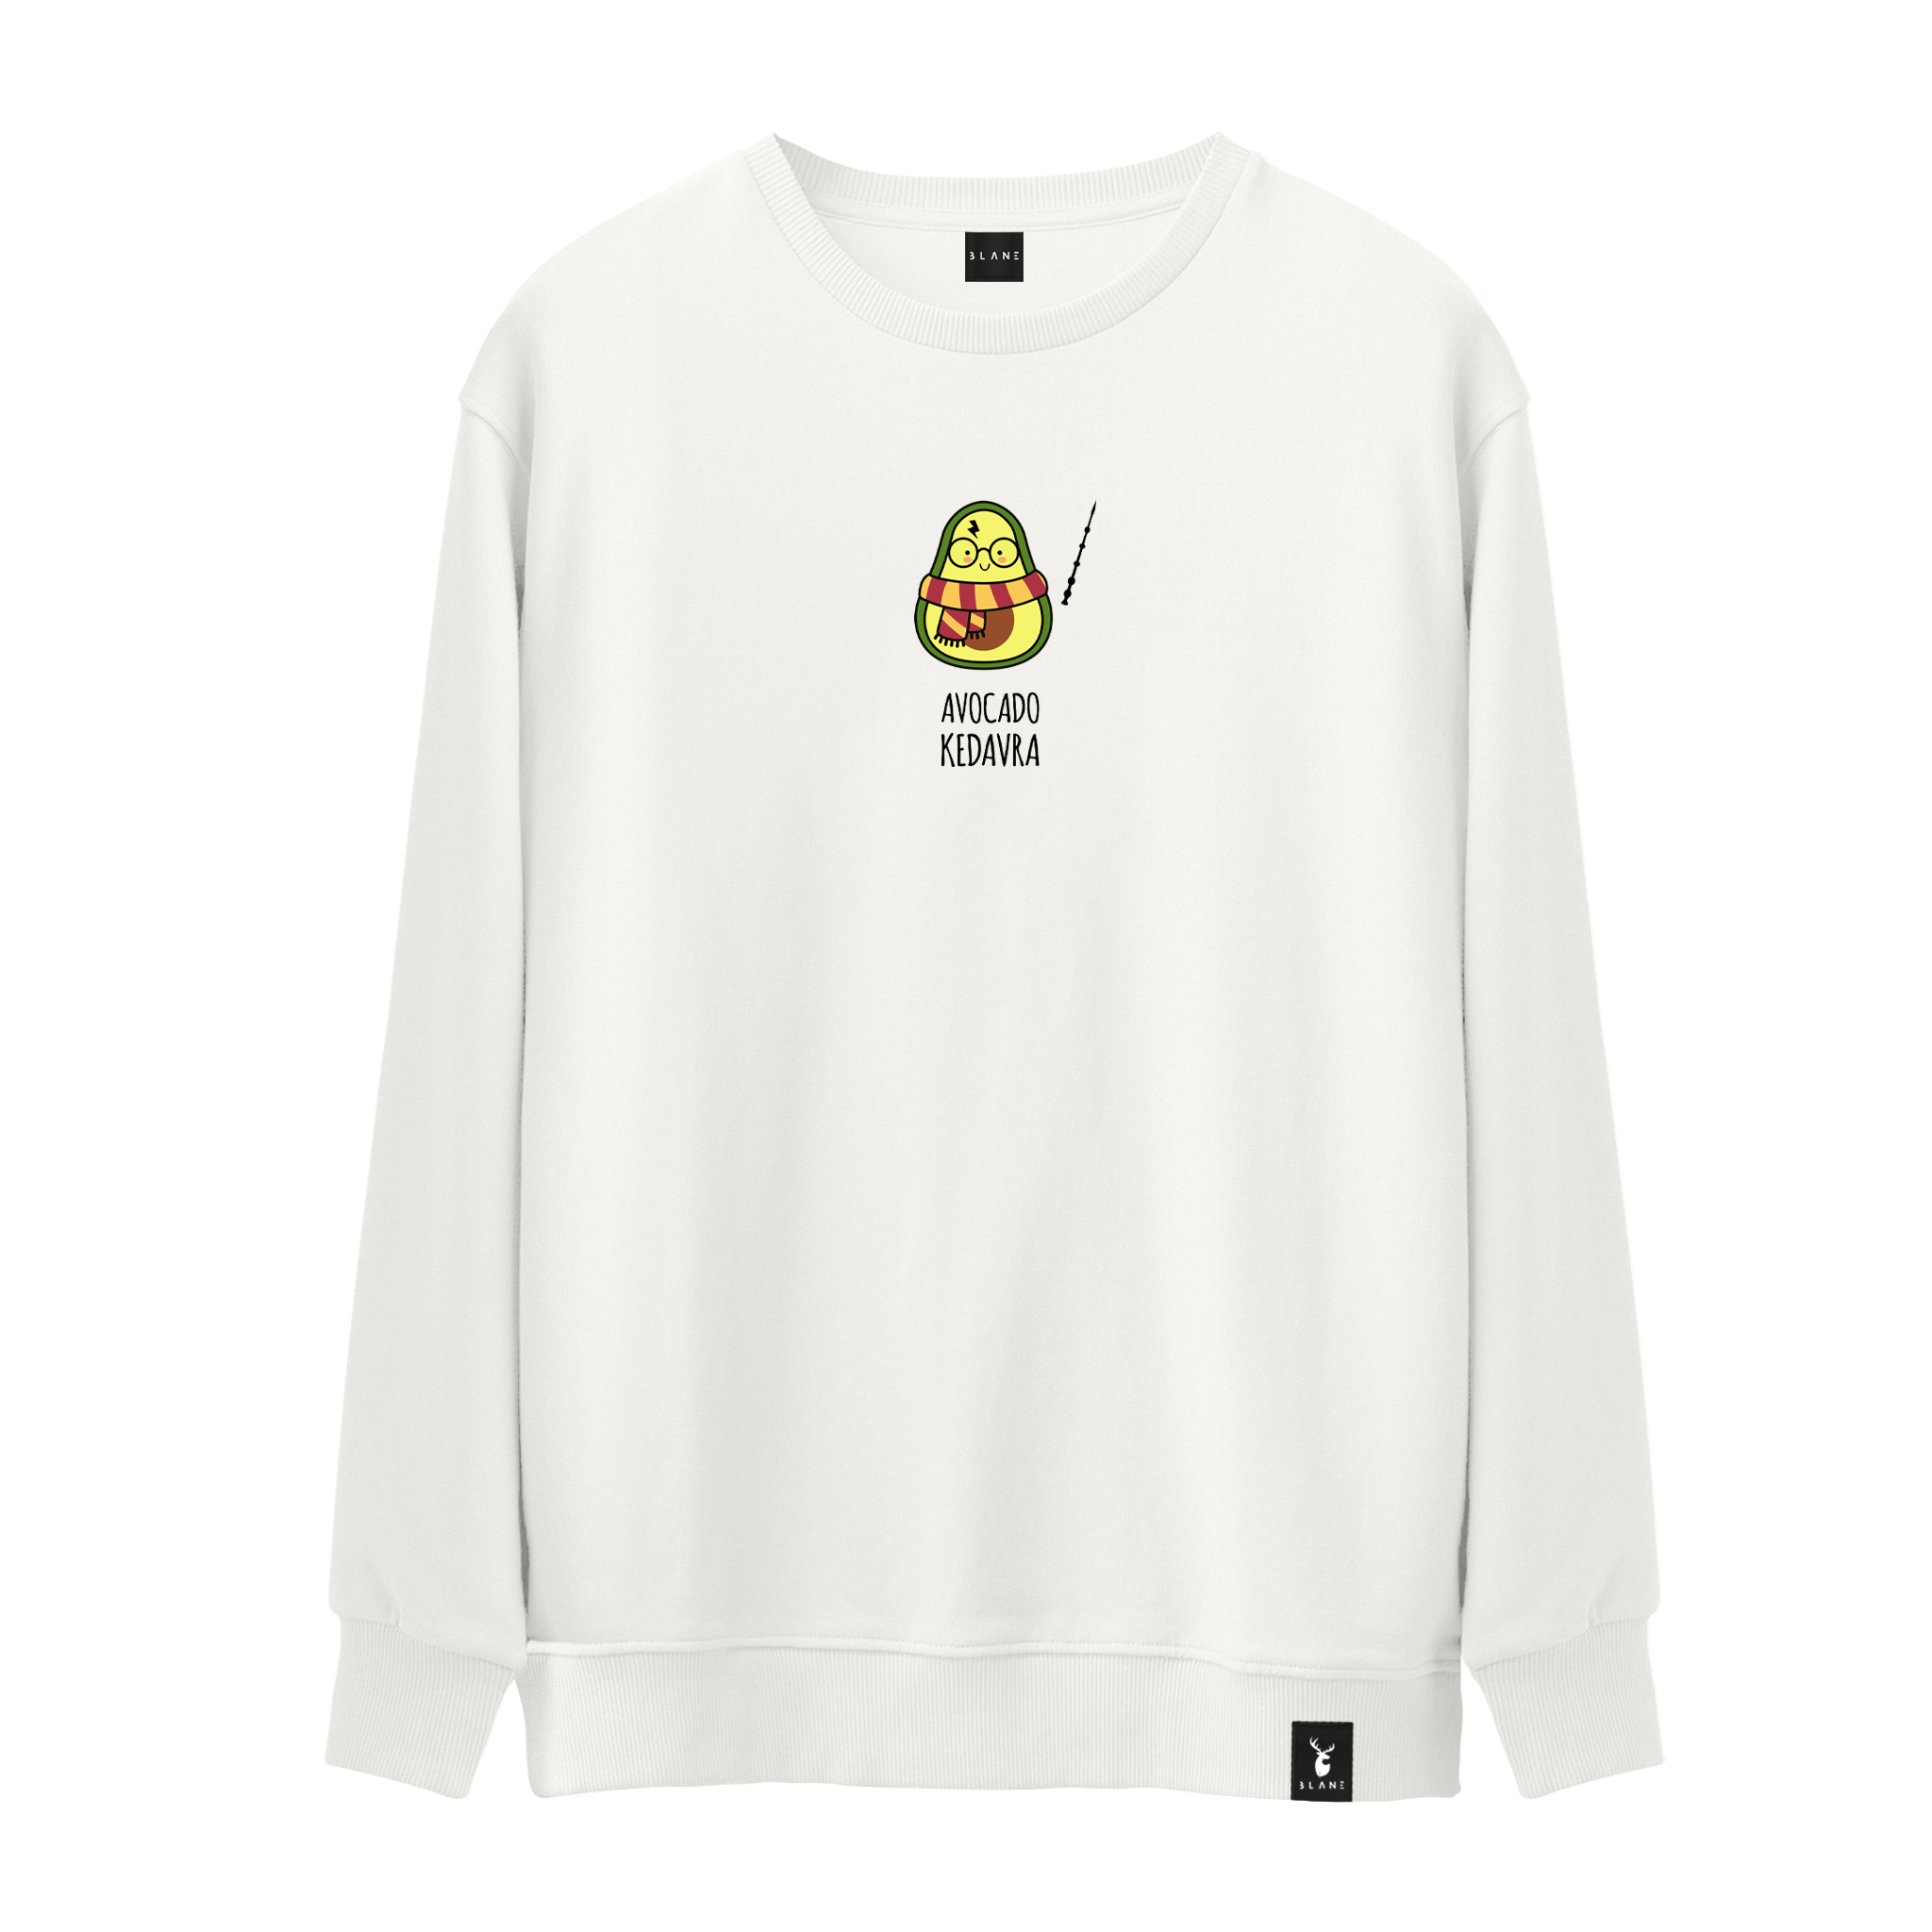 Avocado Kedavra - Sweatshirt